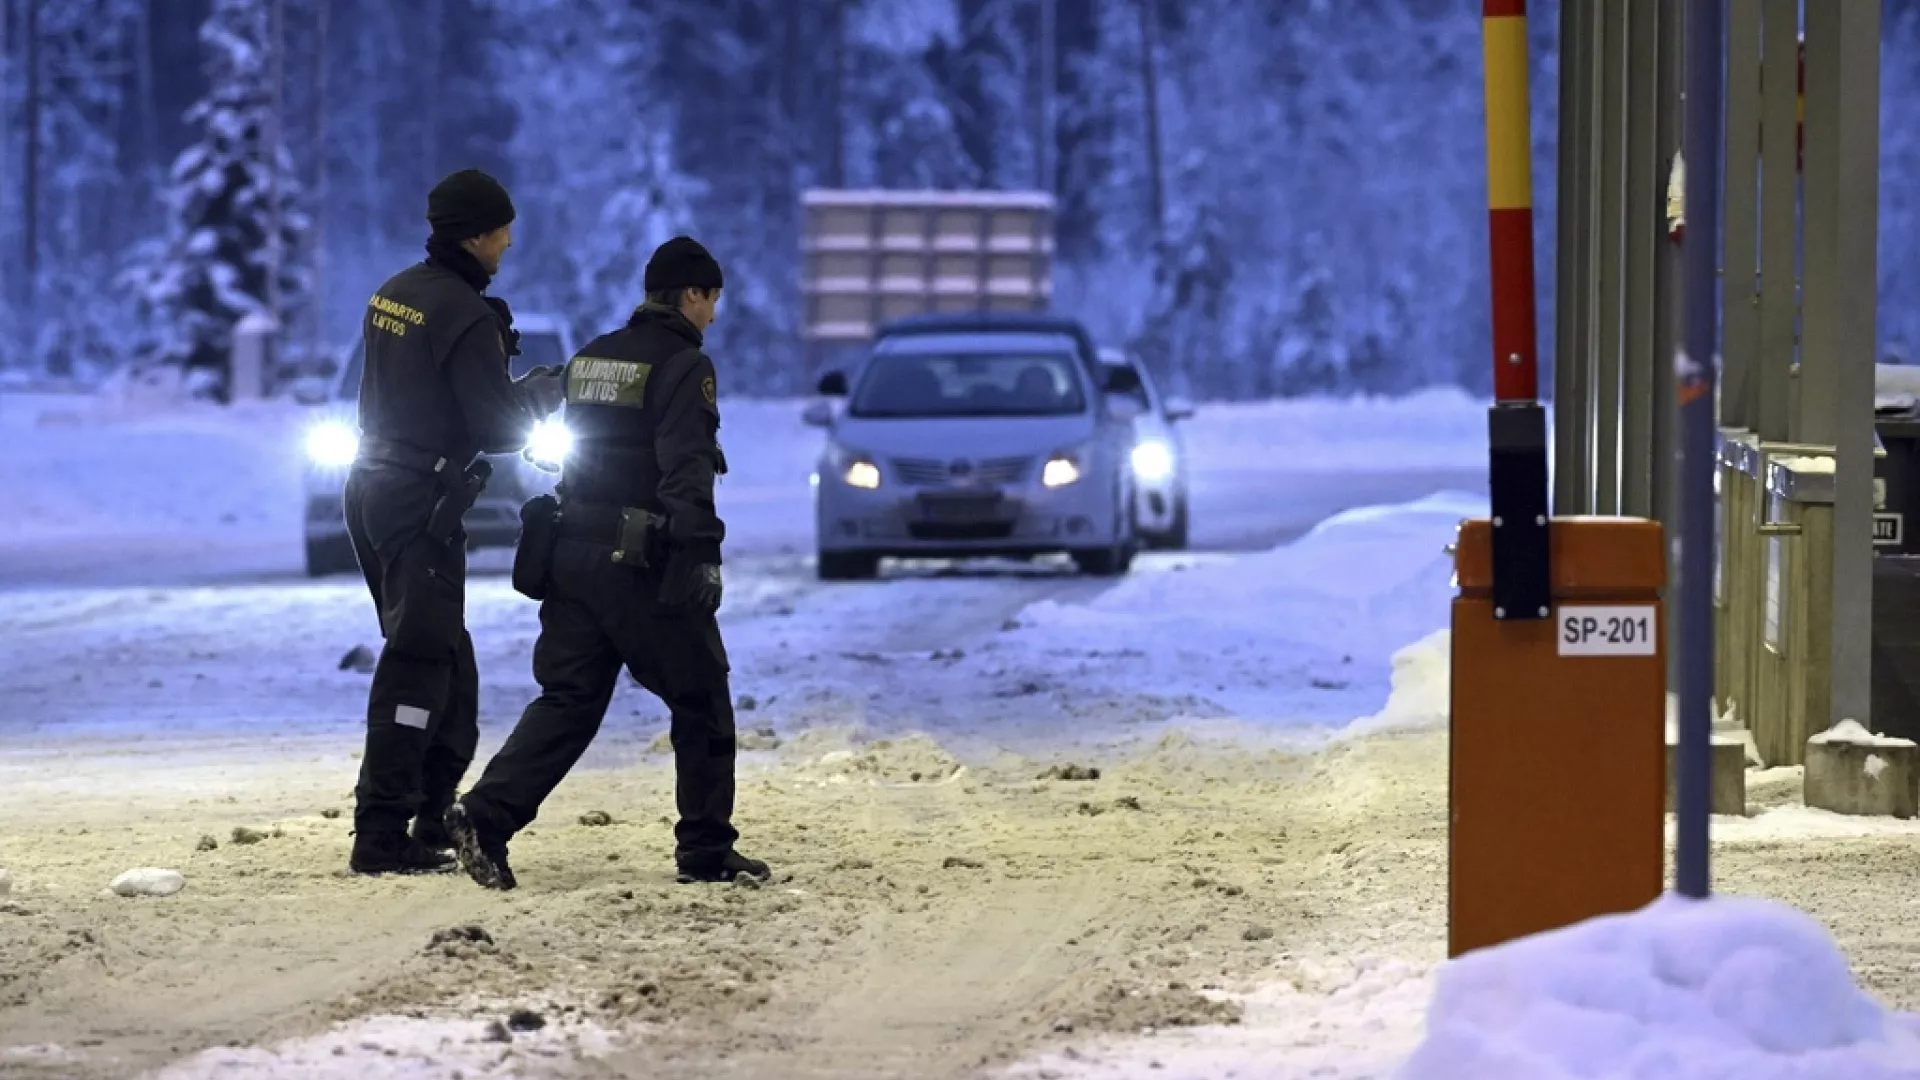 finlanda miraton largimin e emigranteve qe hyjne nga rusia ligji shoqerohet me shqetesim dhe kritika